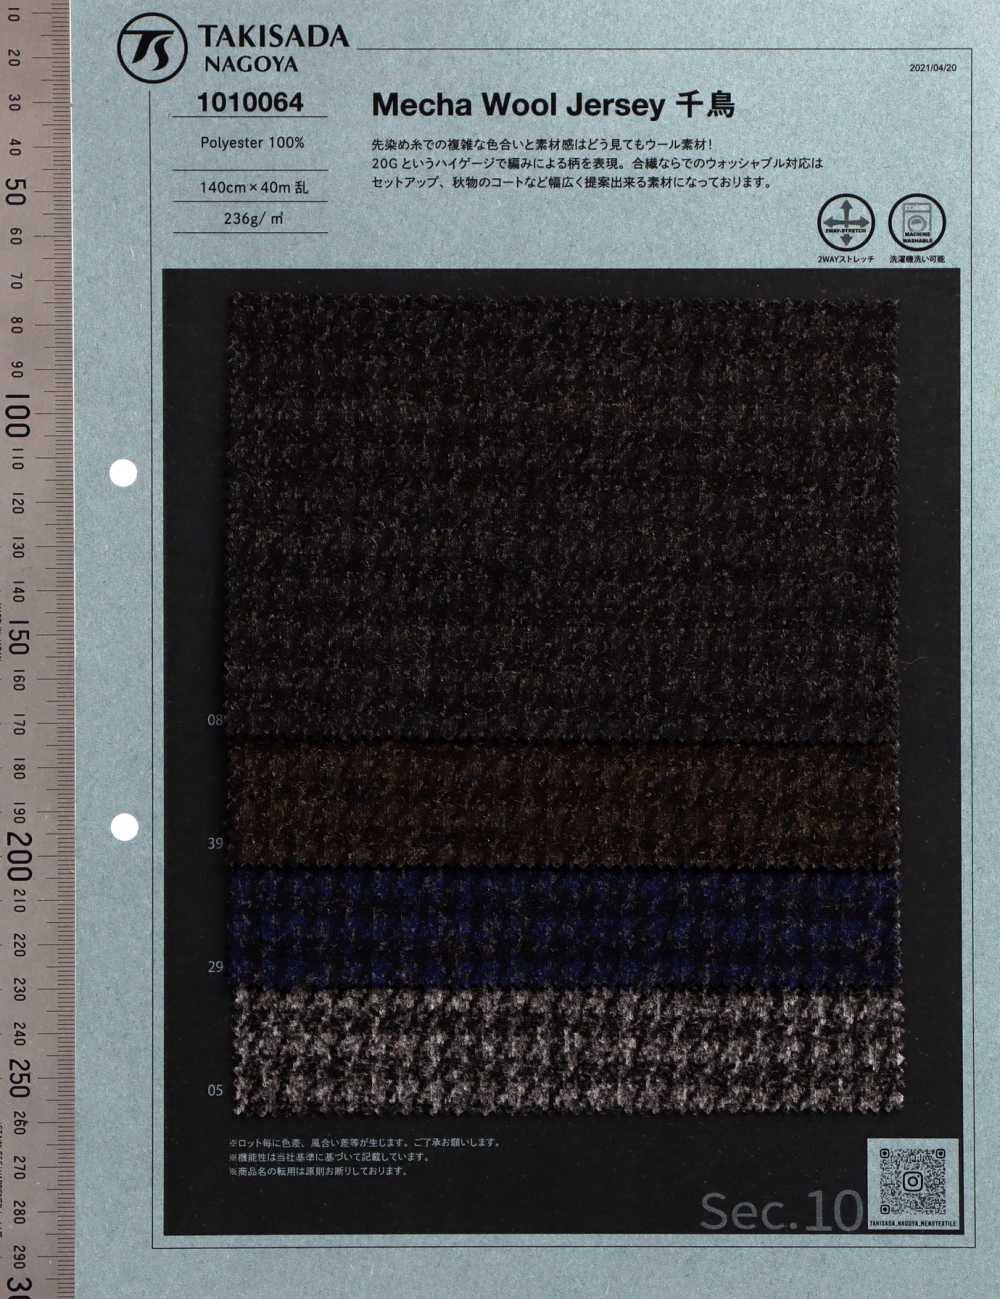 1010064 Tecido Semelhante A Lã Tricotado Houndstooth[Têxtil / Tecido] Takisada Nagoya